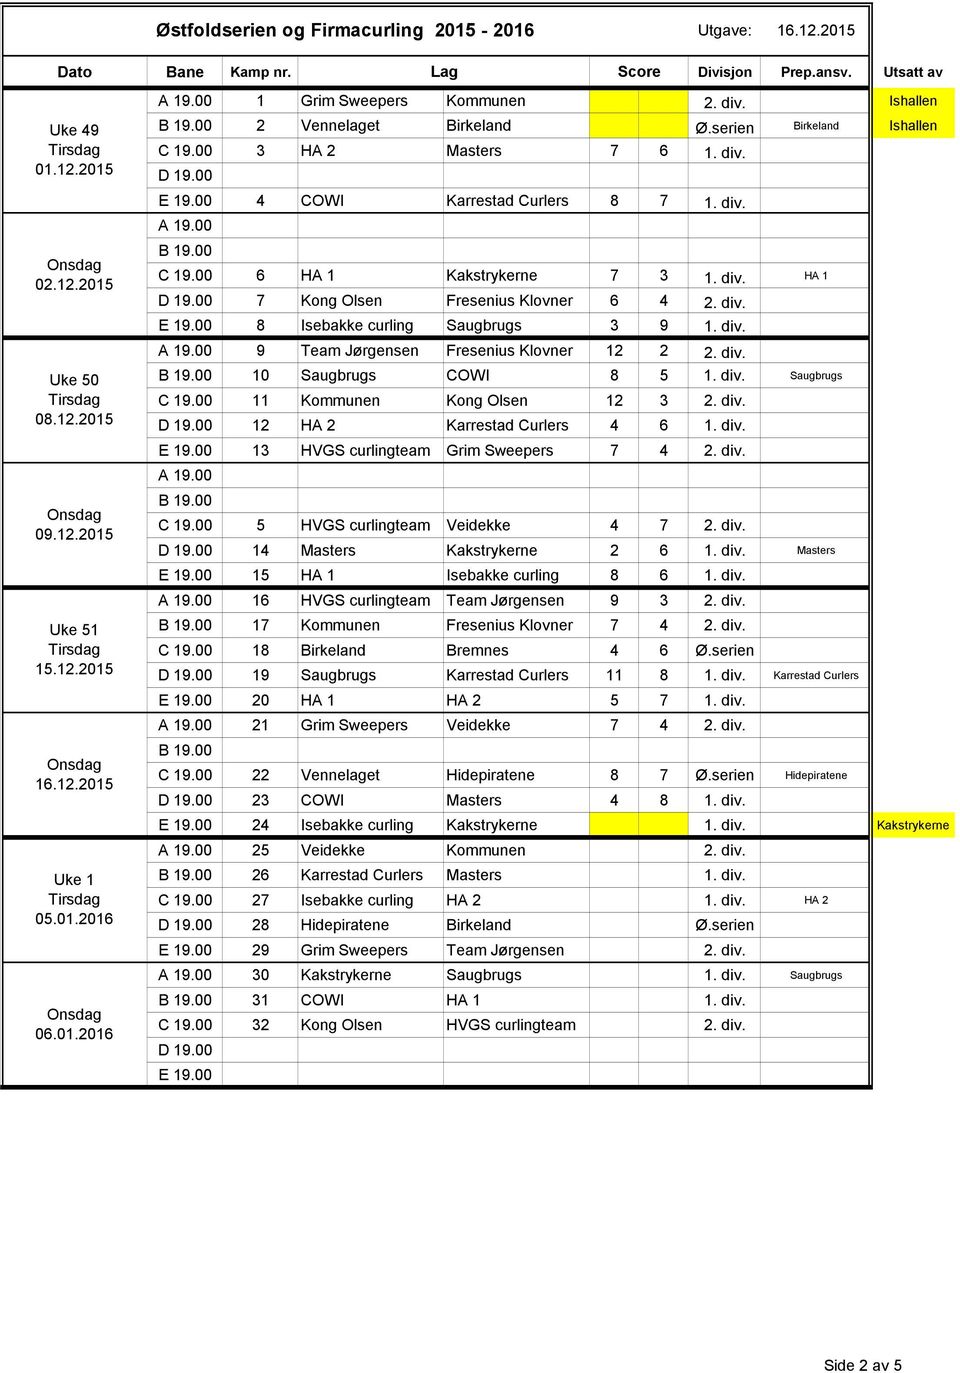 01.2016 06.01.2016 10 Saugbrugs COWI 8 5 1. div. Saugbrugs 11 Kommunen Kong Olsen 12 3 2. div. 12 HA 2 Karrestad Curlers 4 6 1. div. 13 HVGS curlingteam Grim Sweepers 7 4 2. div. 5 HVGS curlingteam Veidekke 4 7 2.